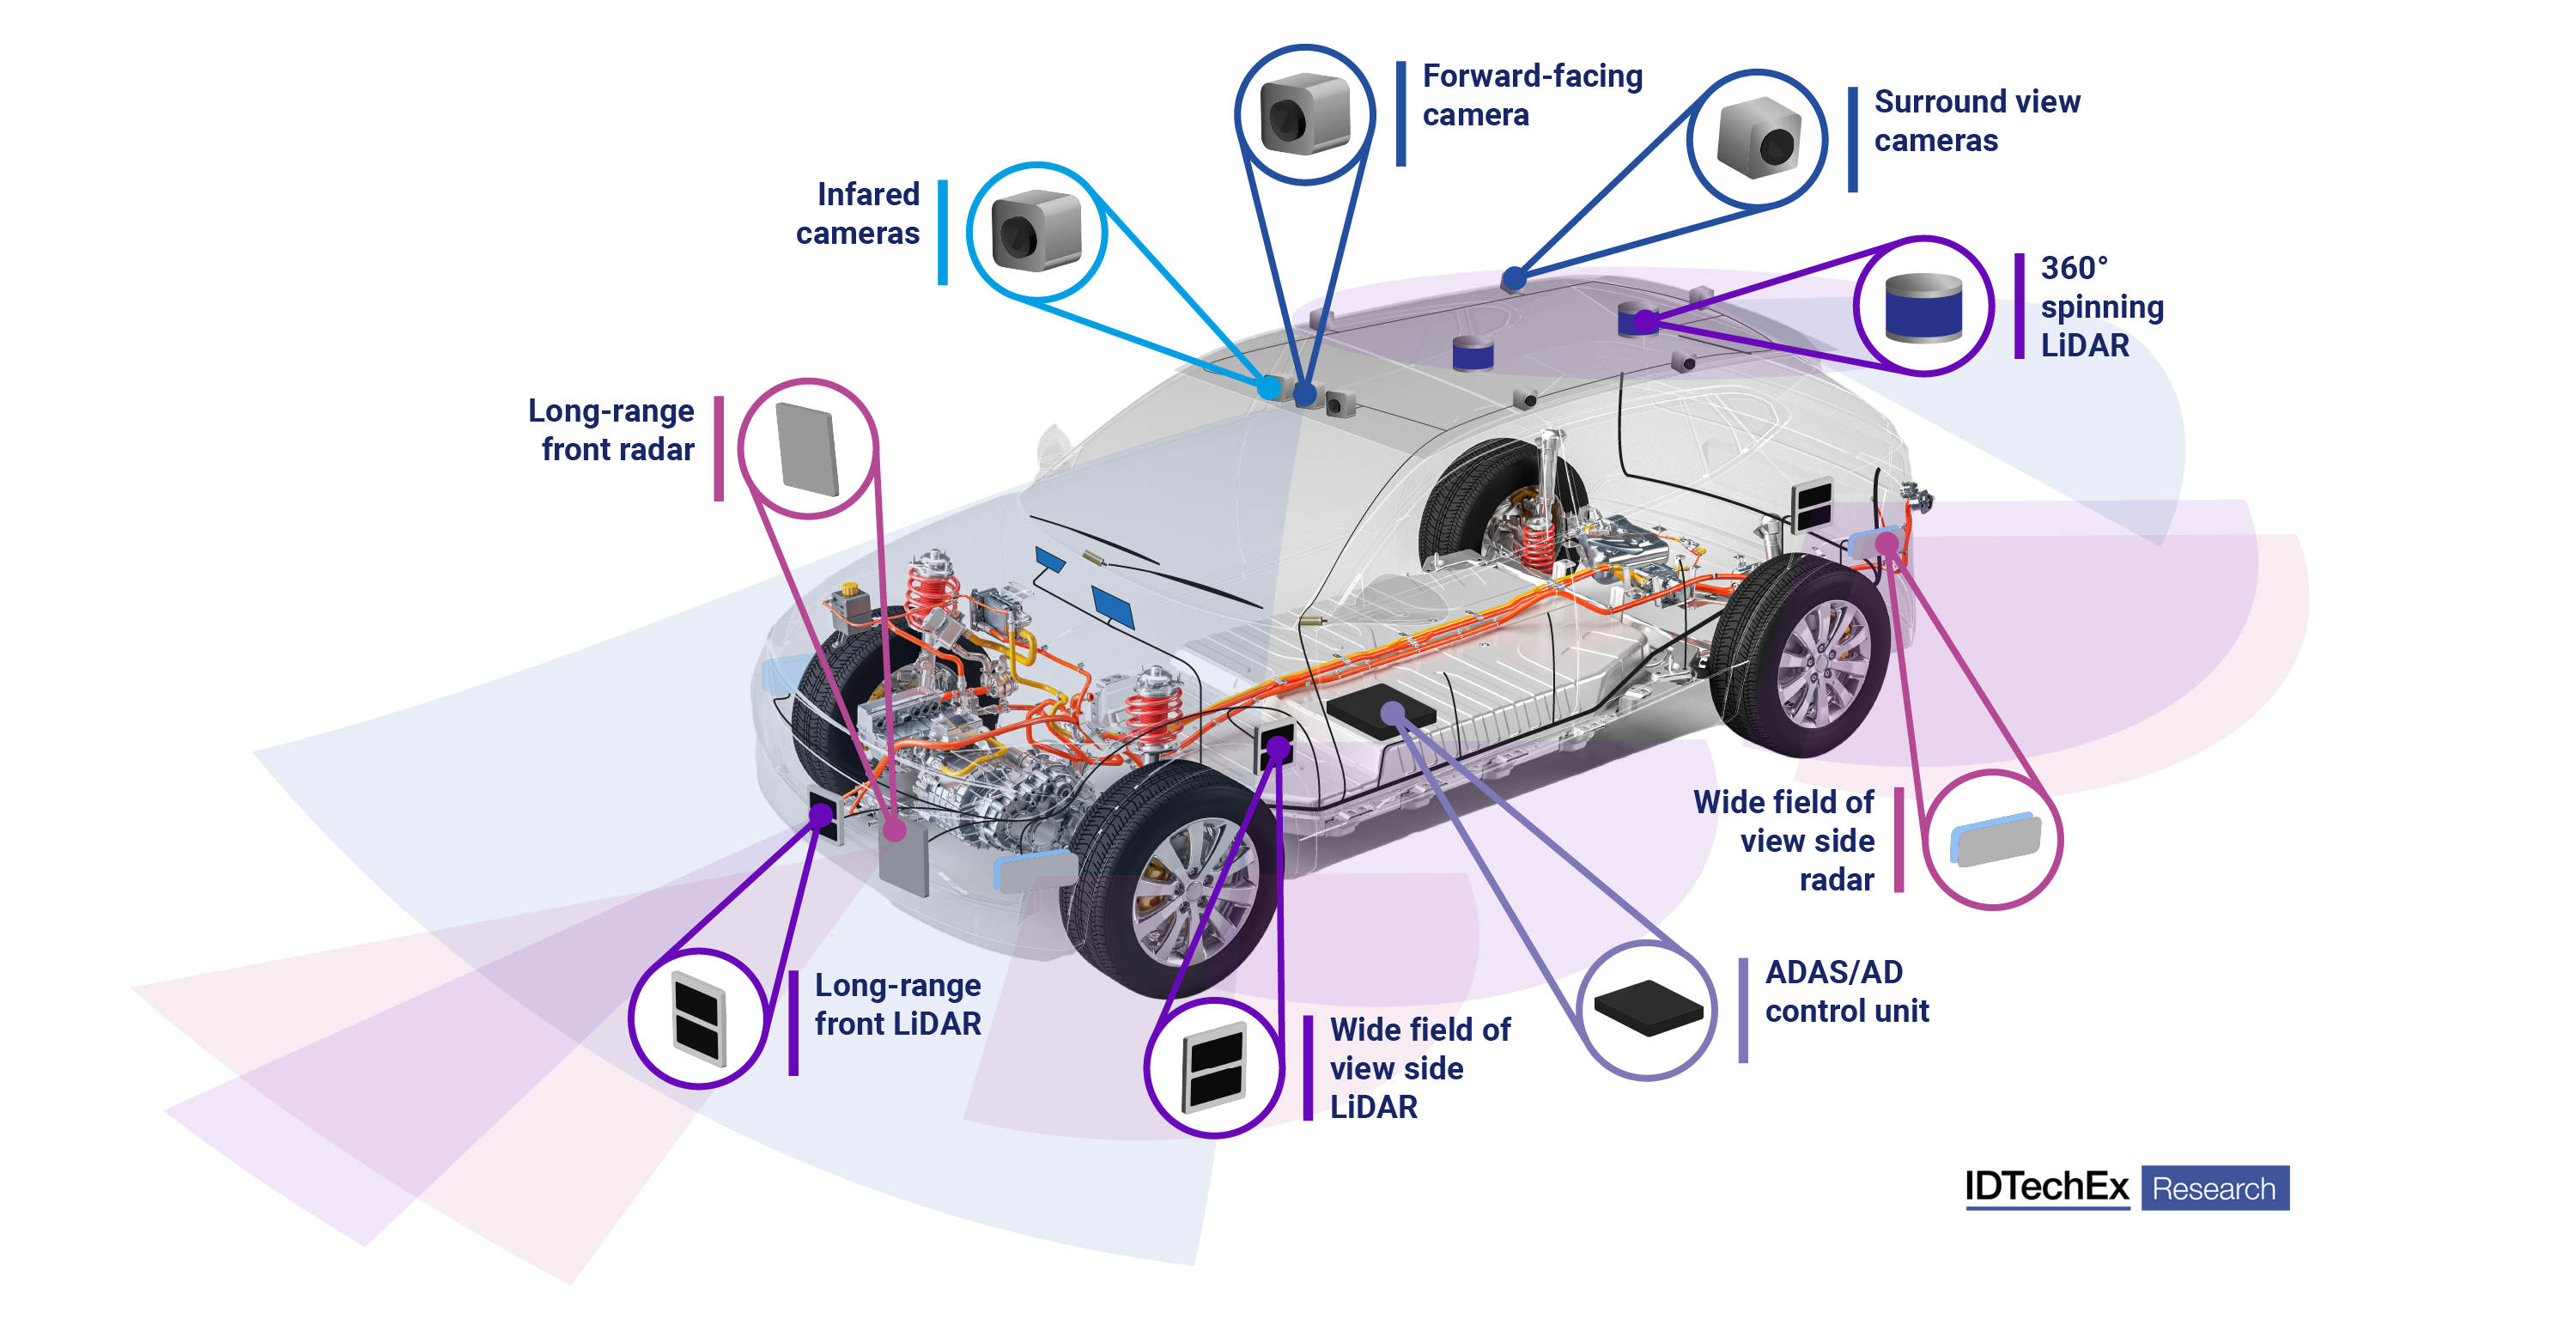 Autonomous vehicle sensor suite. Source: IDTechEx